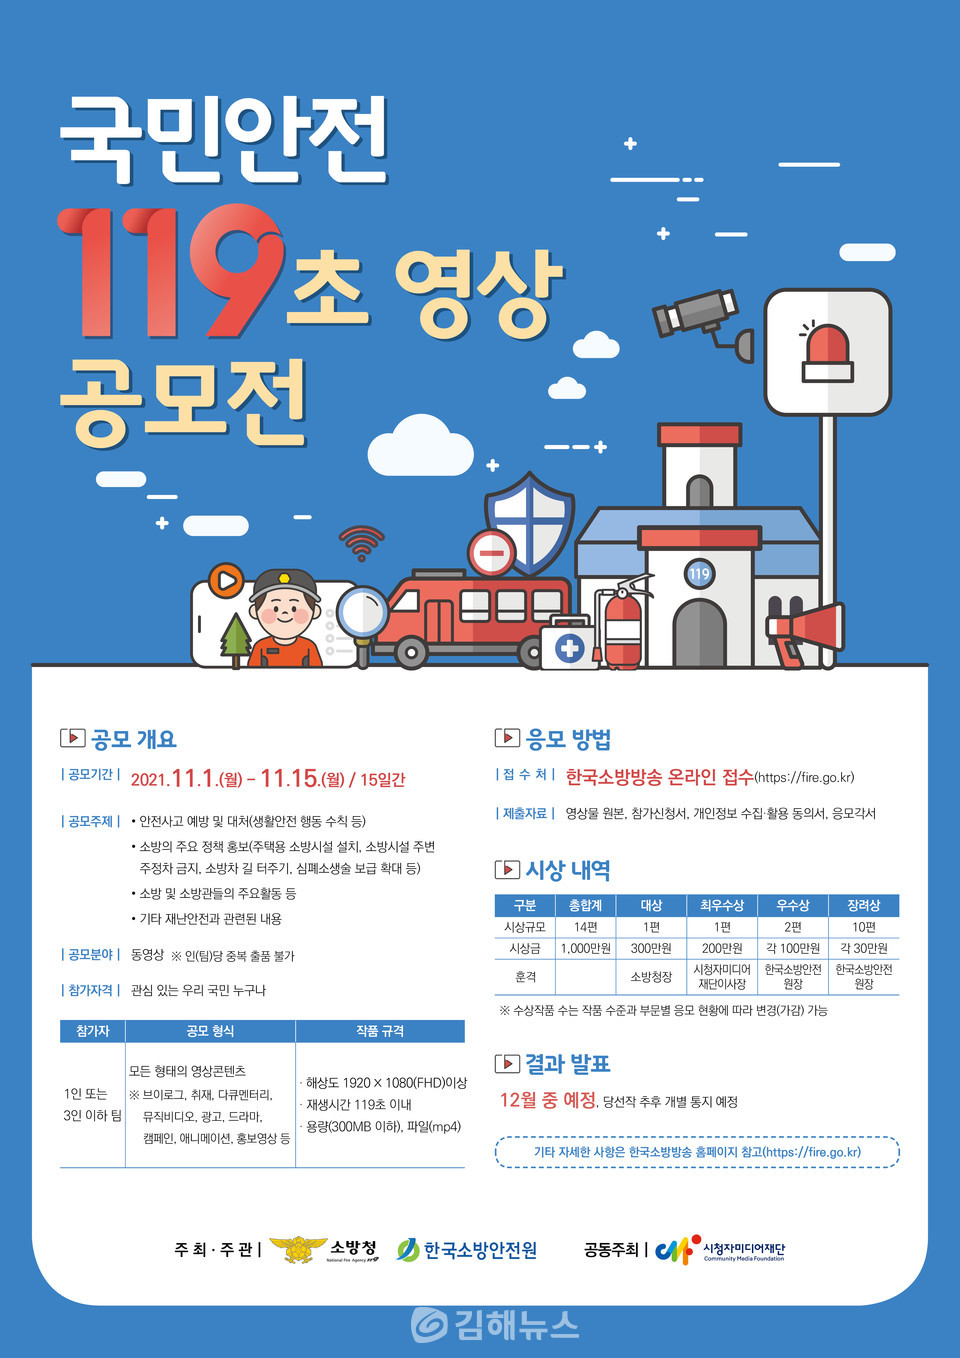 '국민안전 119초 영상 공모전' 포스터.